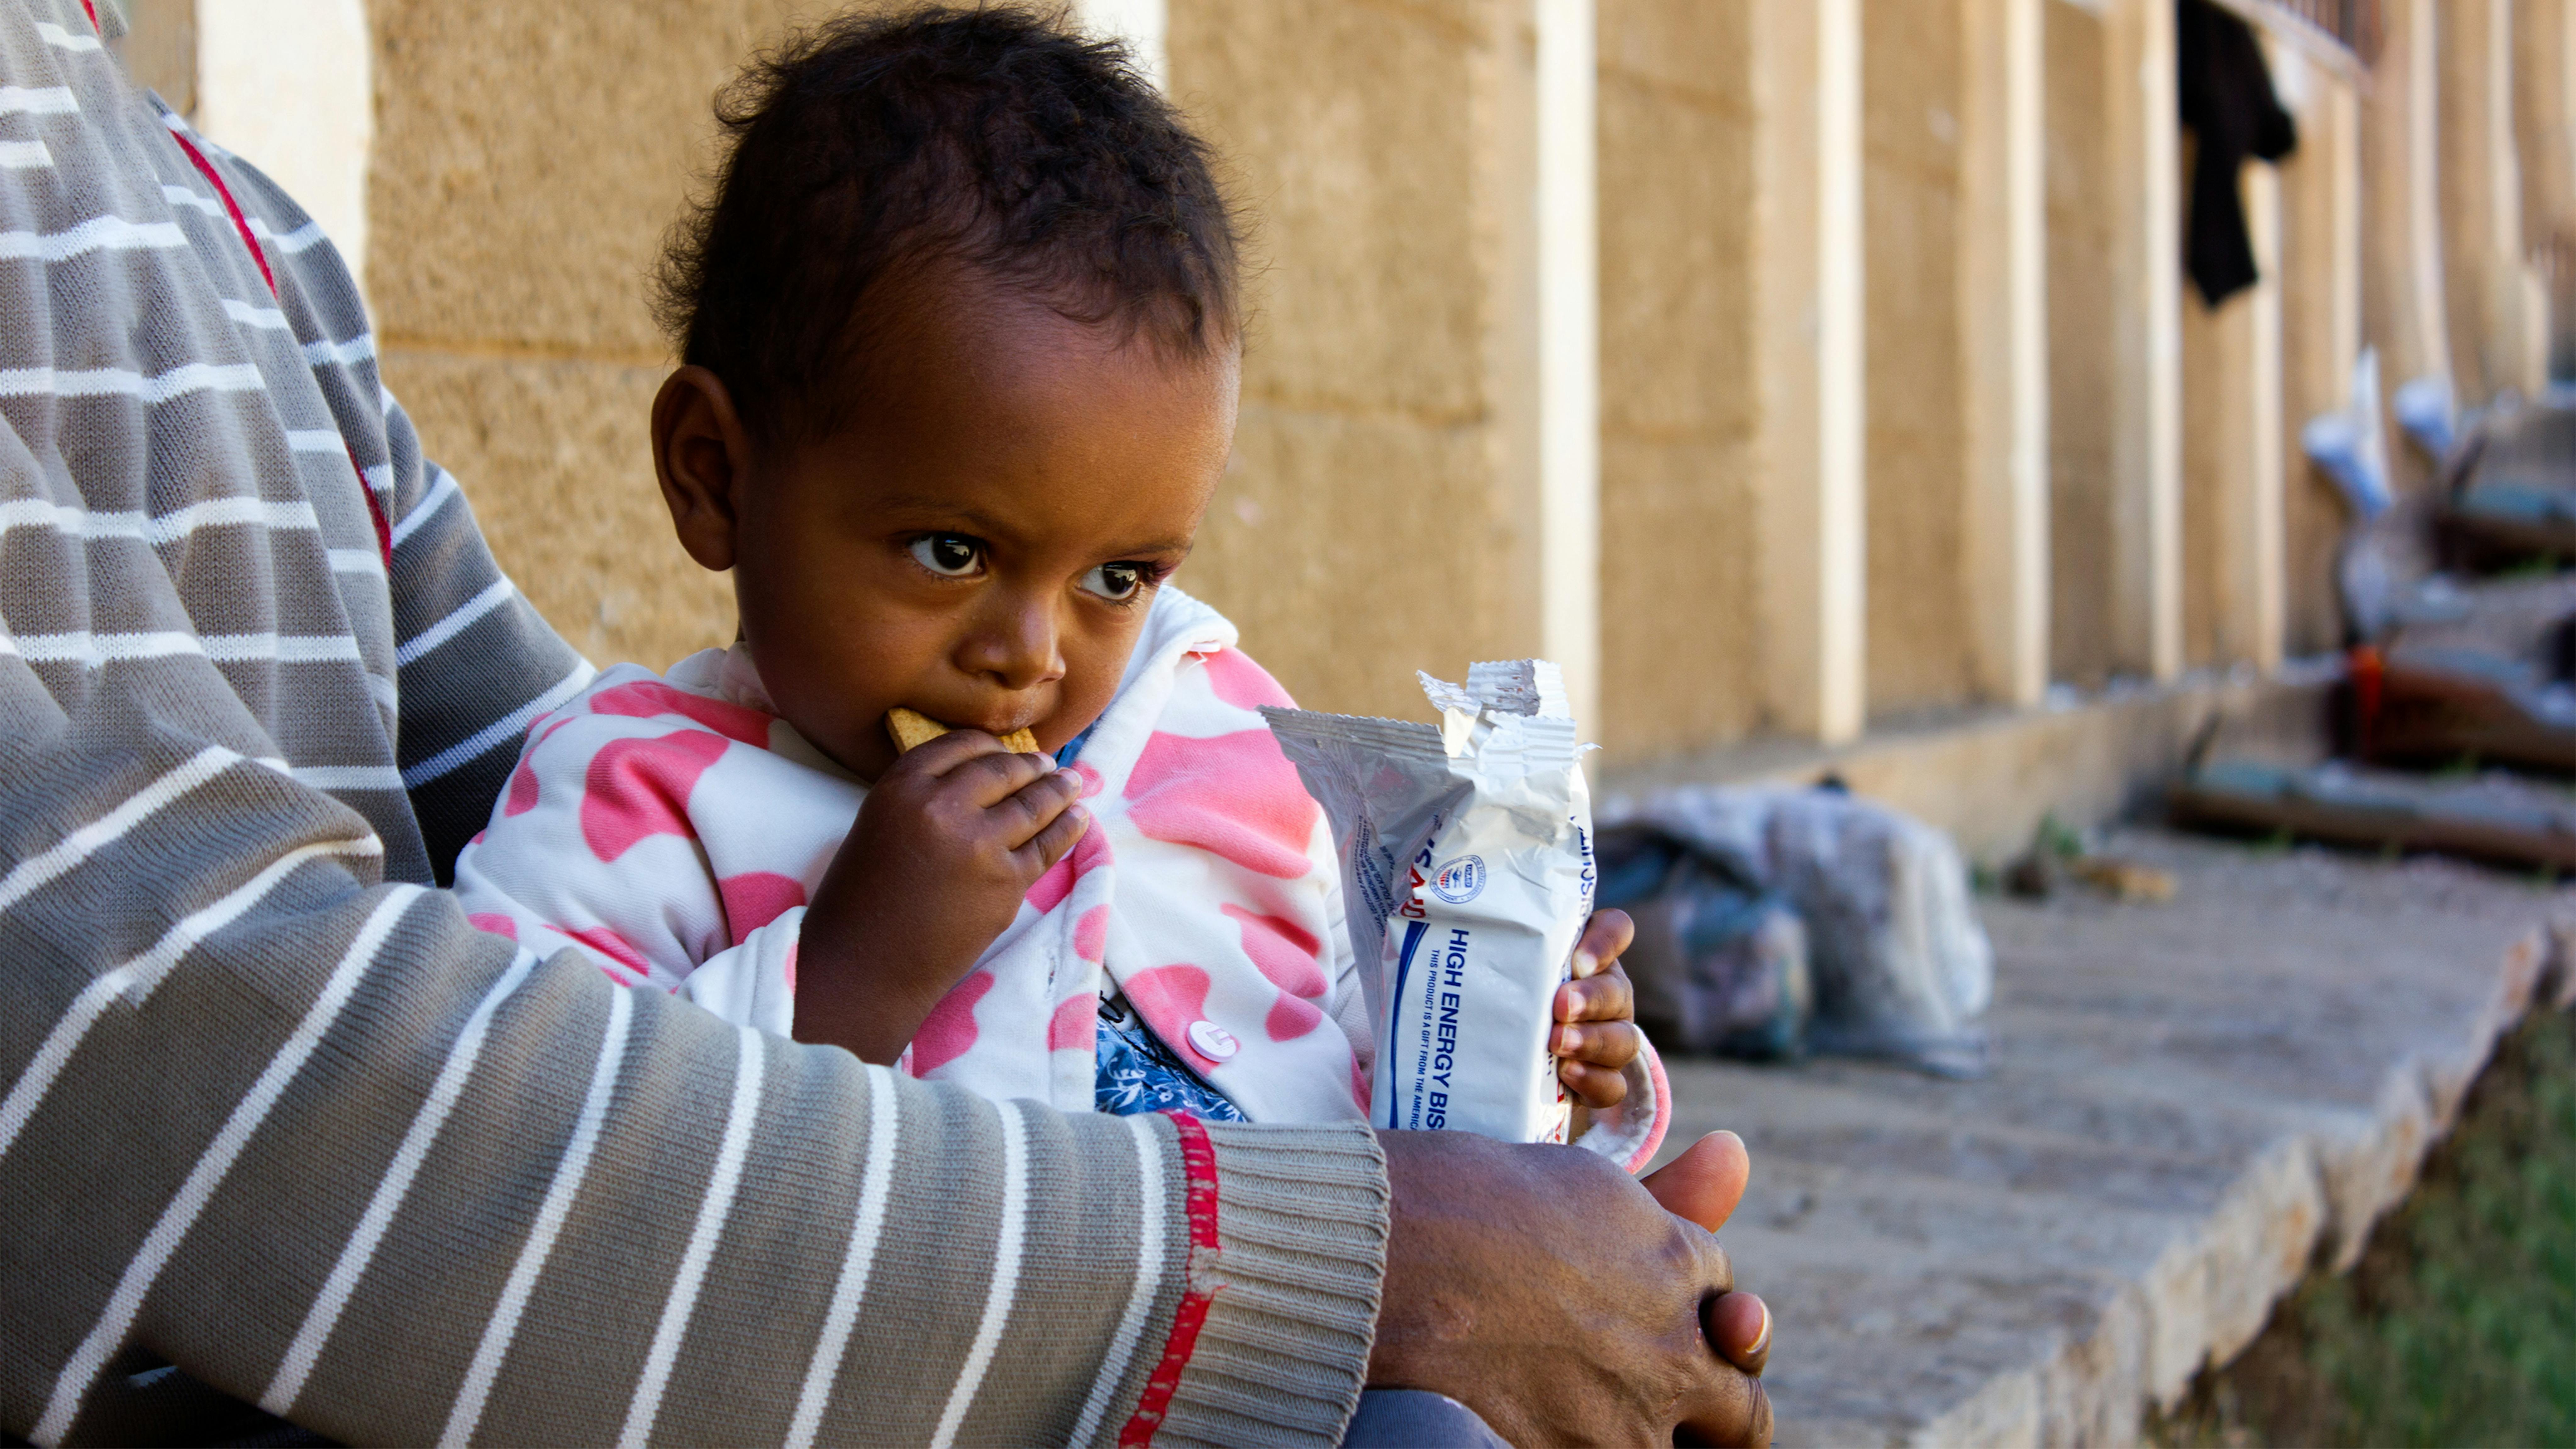 Etiopia, Meklit Desta,2, sta mangiando un biscotto ad alto contenuto energetico per aumentare i suoi livelli nutrizionali in un campo improvvisato a Mekelle